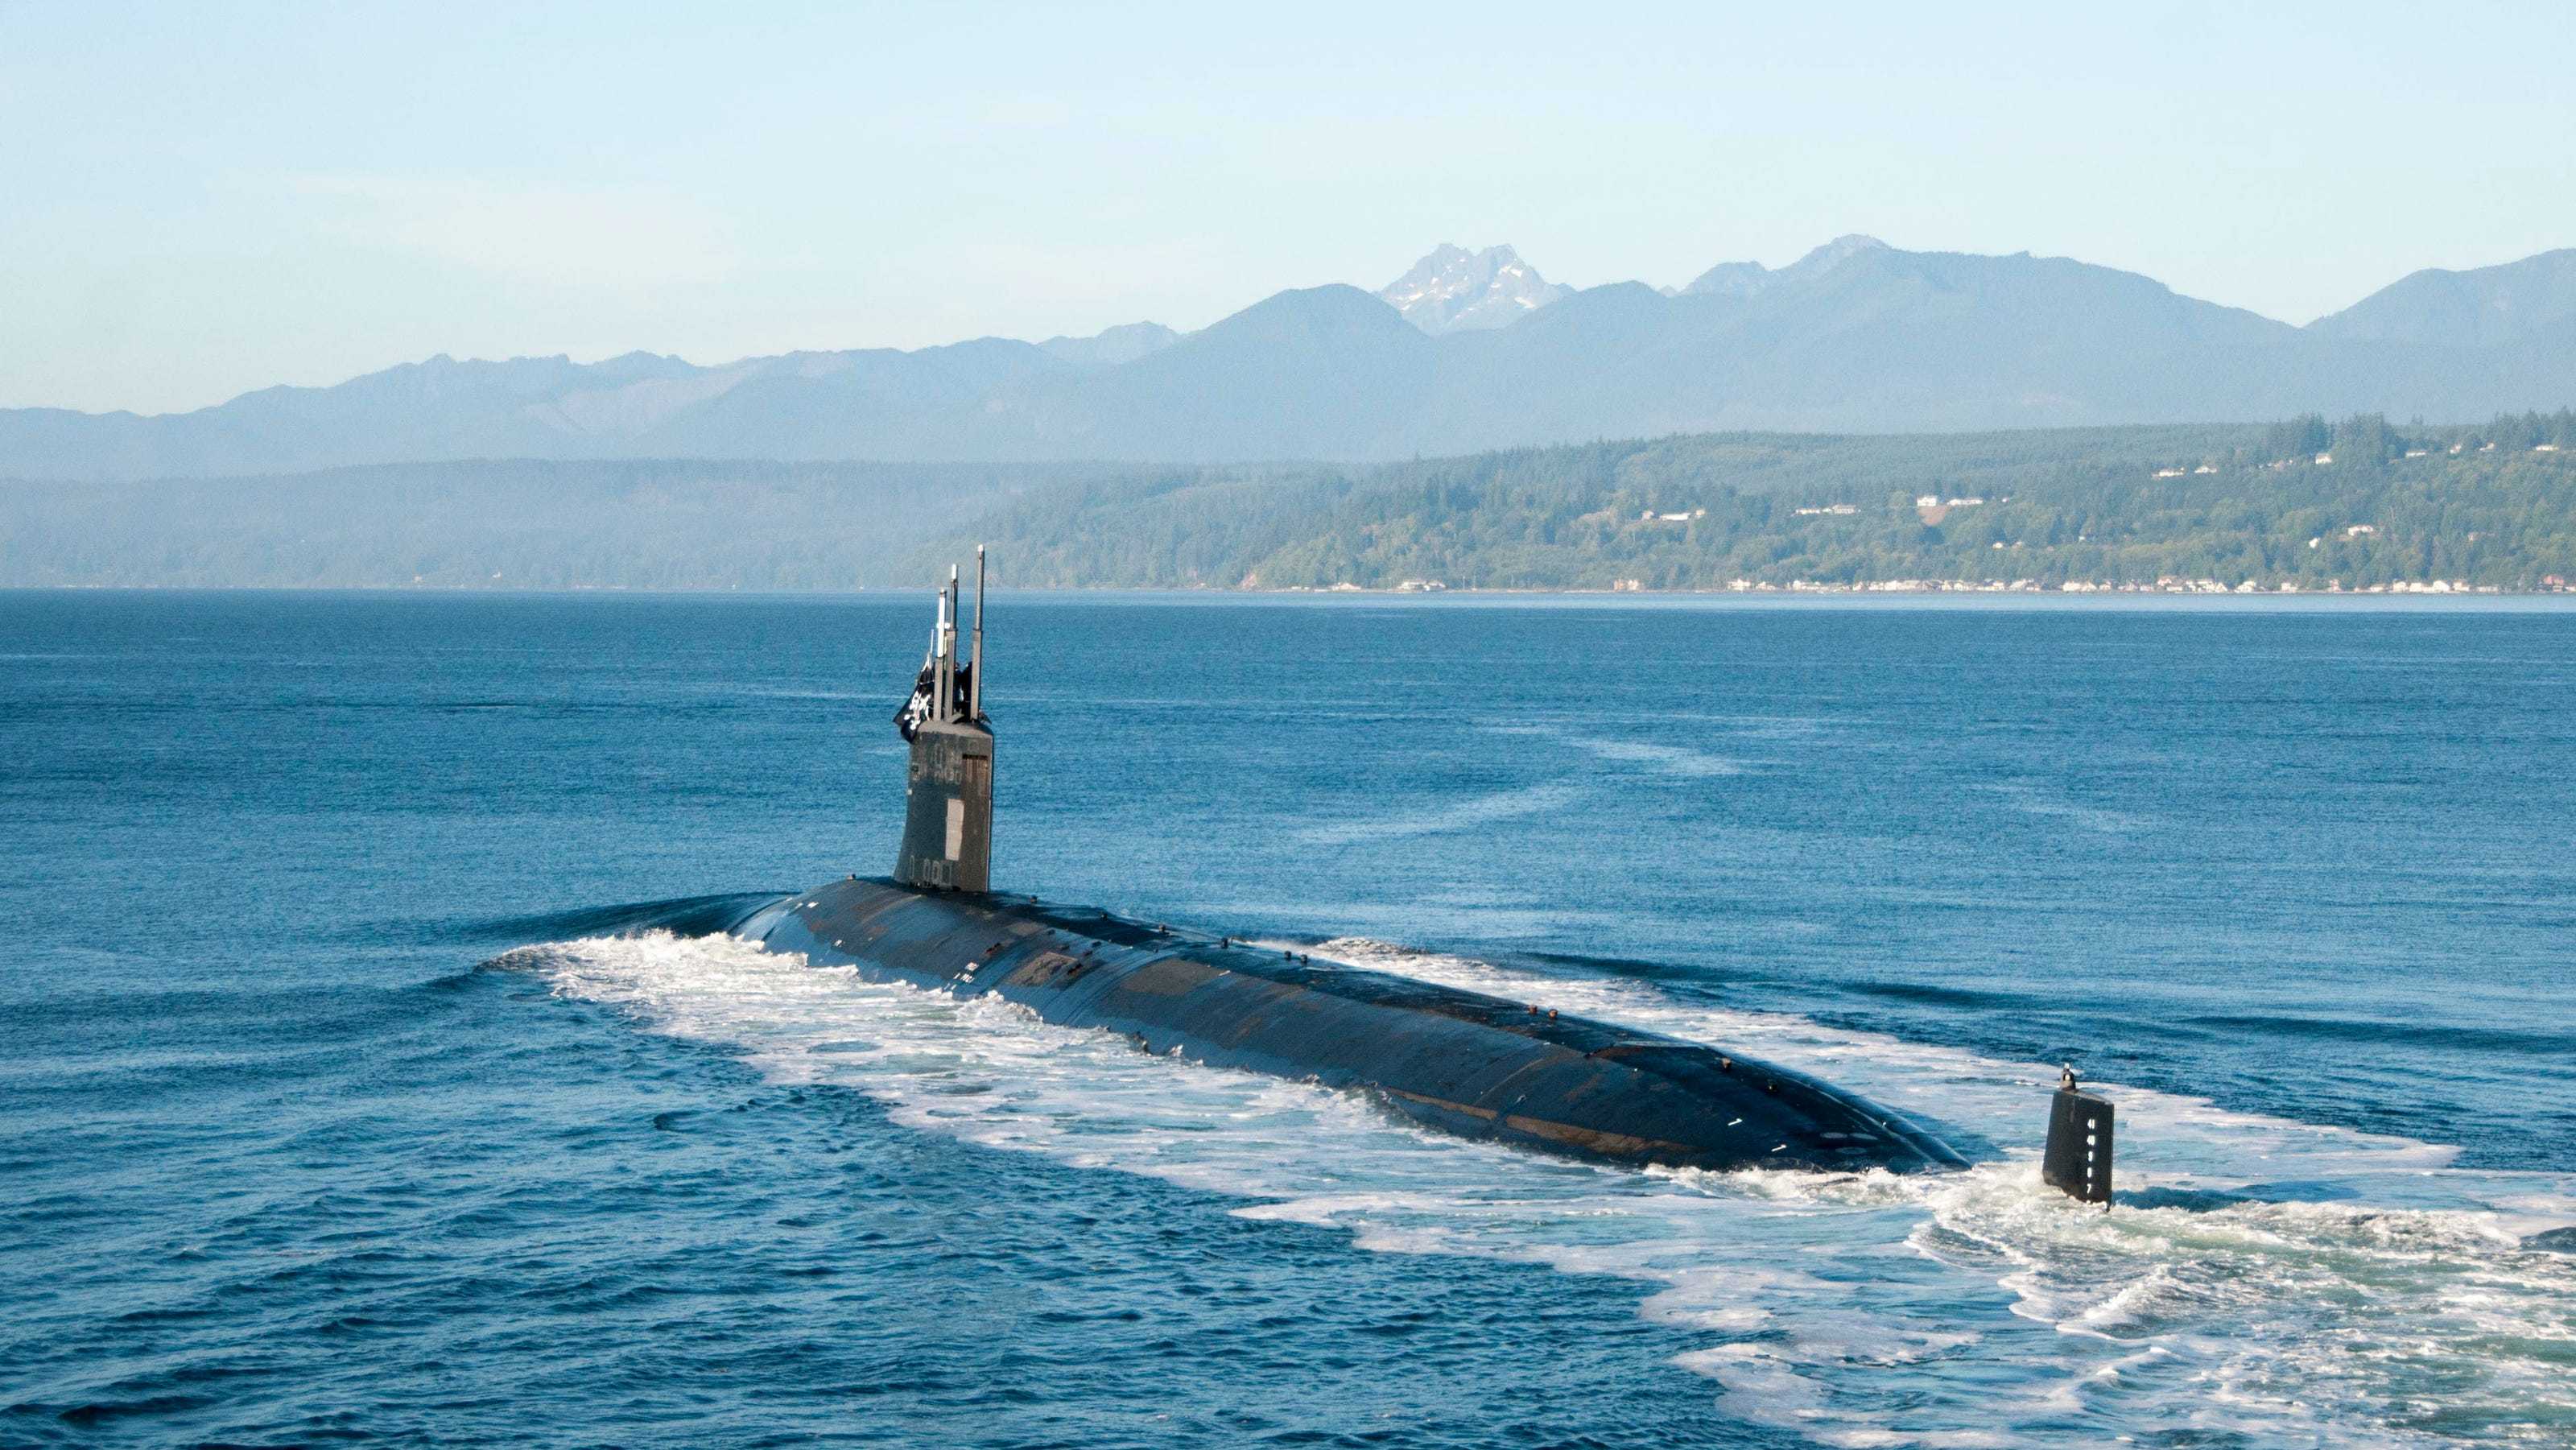 原创美国海军最先进的核潜艇竟斗不过臭虫水兵被迫当诱饵